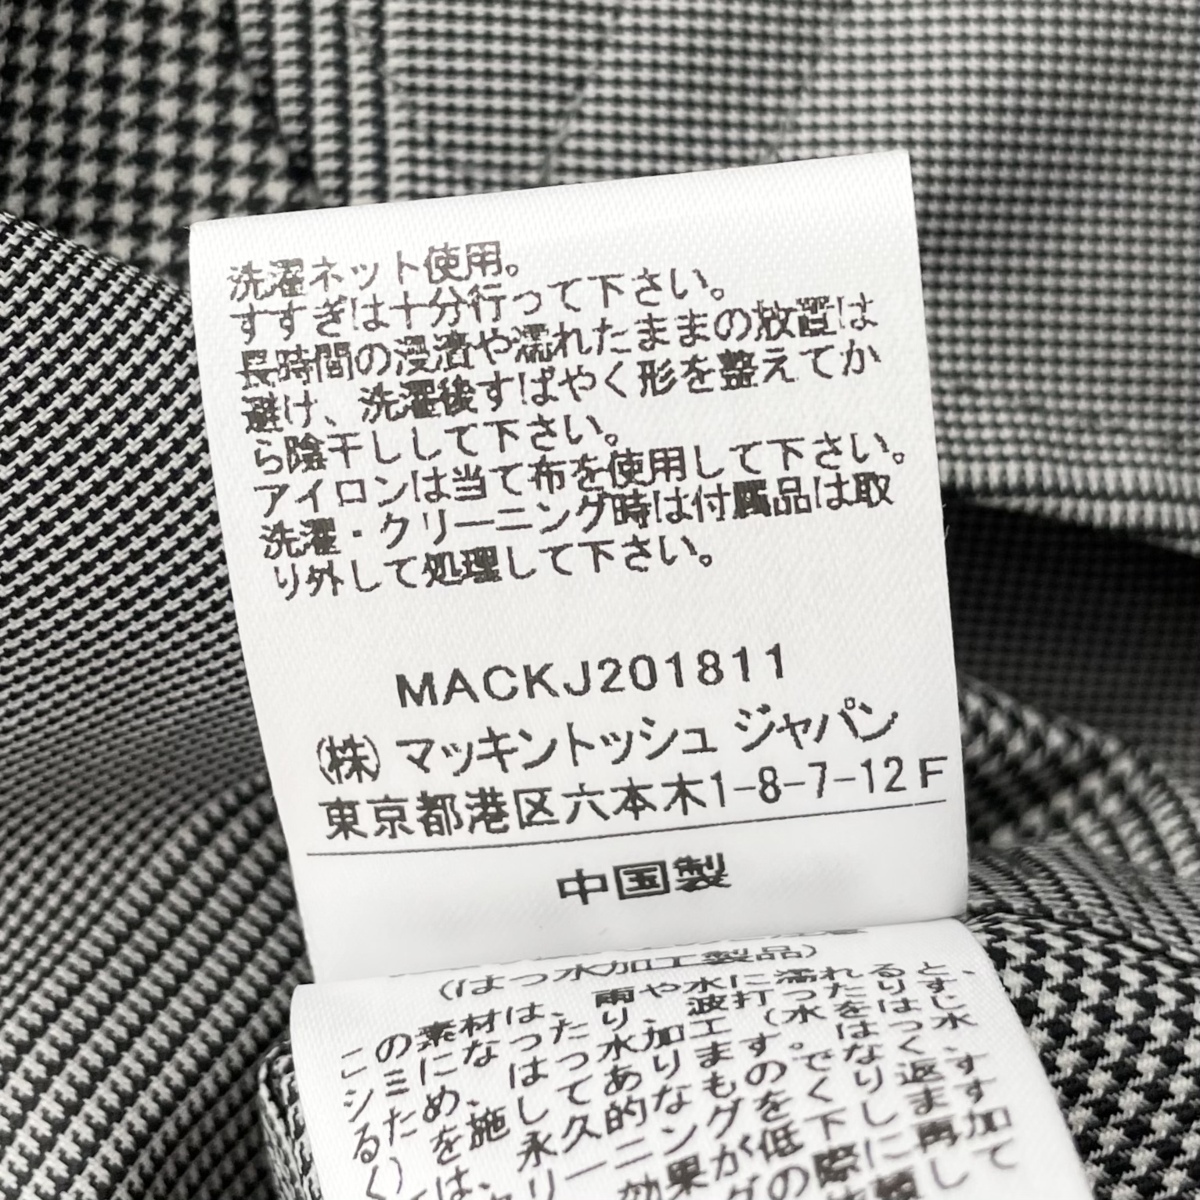  не использовался товар Traditional Weatherwear × nano universe специальный заказ Glenn в клетку весеннее пальто женский 36/S серый обычная цена Y50,760-